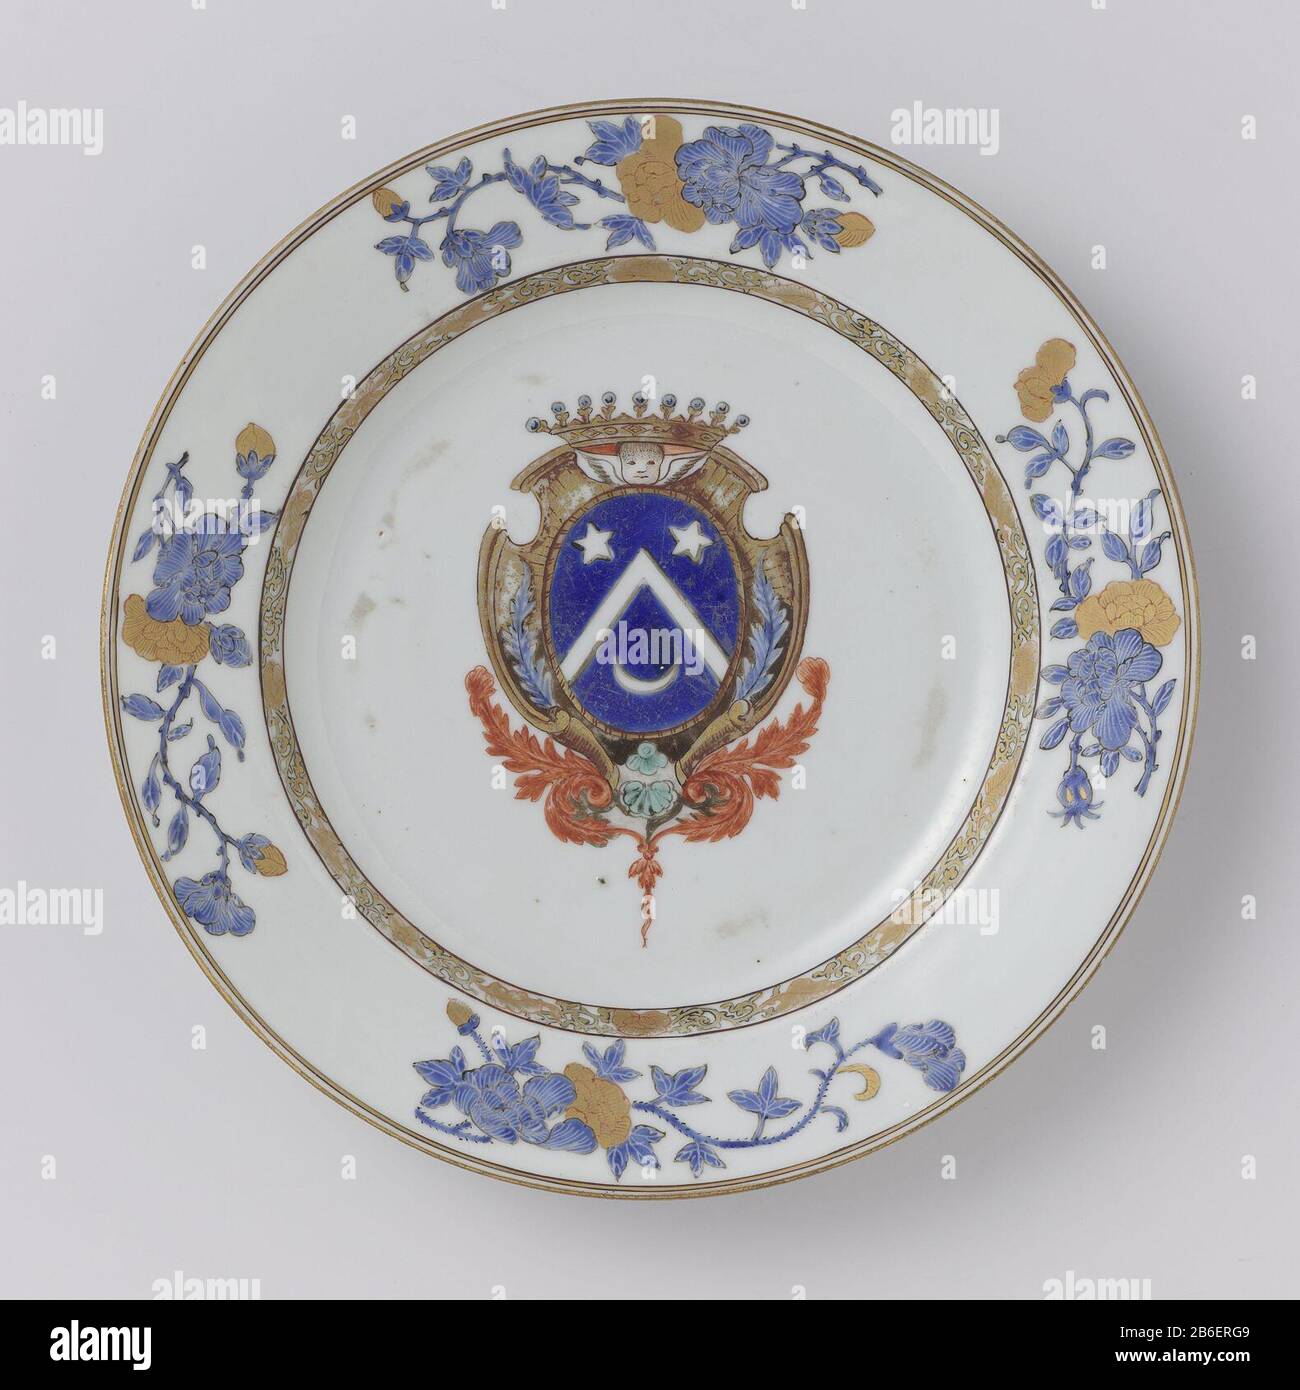 Plate with a crowned coat of arms and four flower sprays Bord van  porselein, beschilderd op het glazuur in blauw, rood, zwart en goud. Op het  plat een gekroond wapen met twee